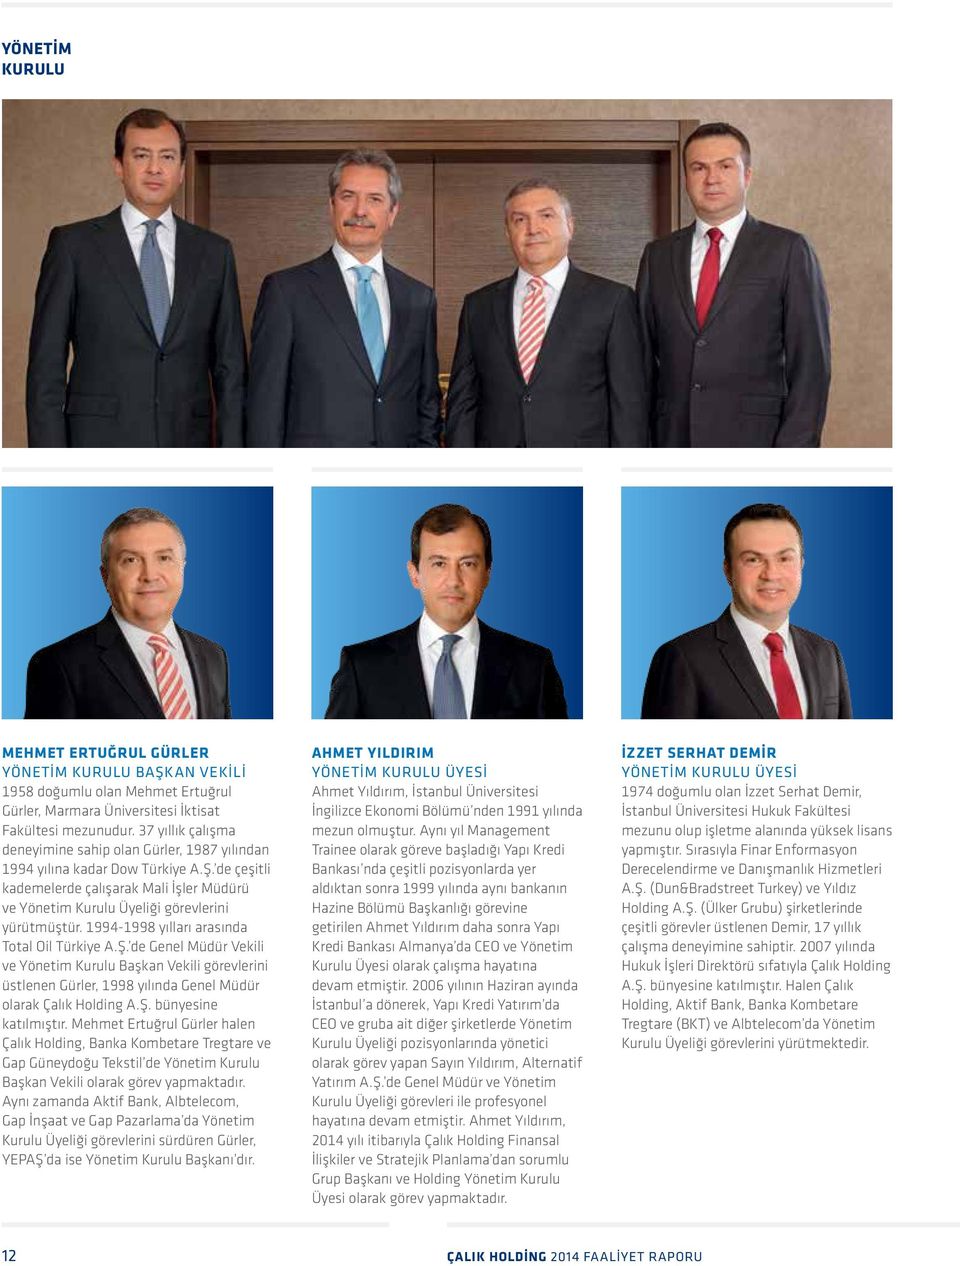 1994-1998 yılları arasında Total Oil Türkiye A.Ş. de Genel Müdür Vekili ve Yönetim Kurulu Başkan Vekili görevlerini üstlenen Gürler, 1998 yılında Genel Müdür olarak Çalık Holding A.Ş. bünyesine katılmıştır.